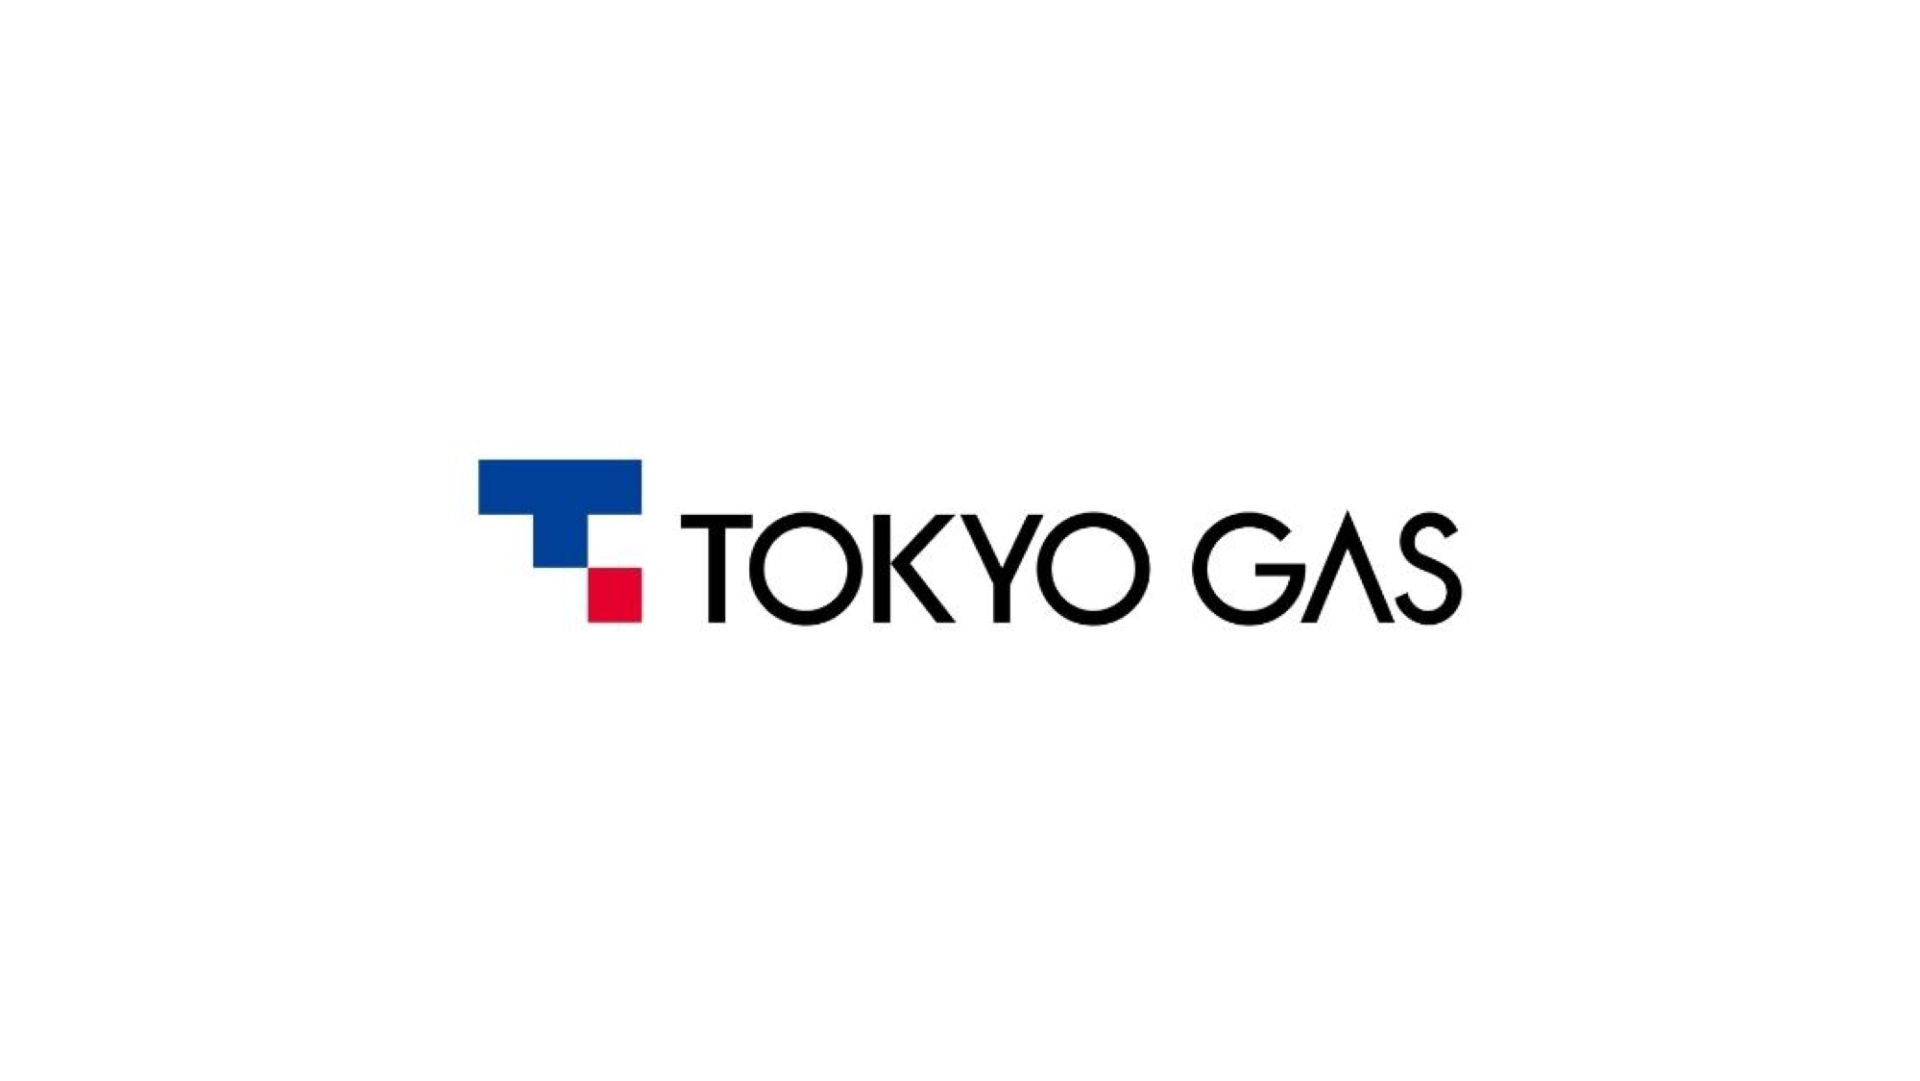 【東京ガス】過去の使用量や請求額をダウンロードする方法【履歴確認】